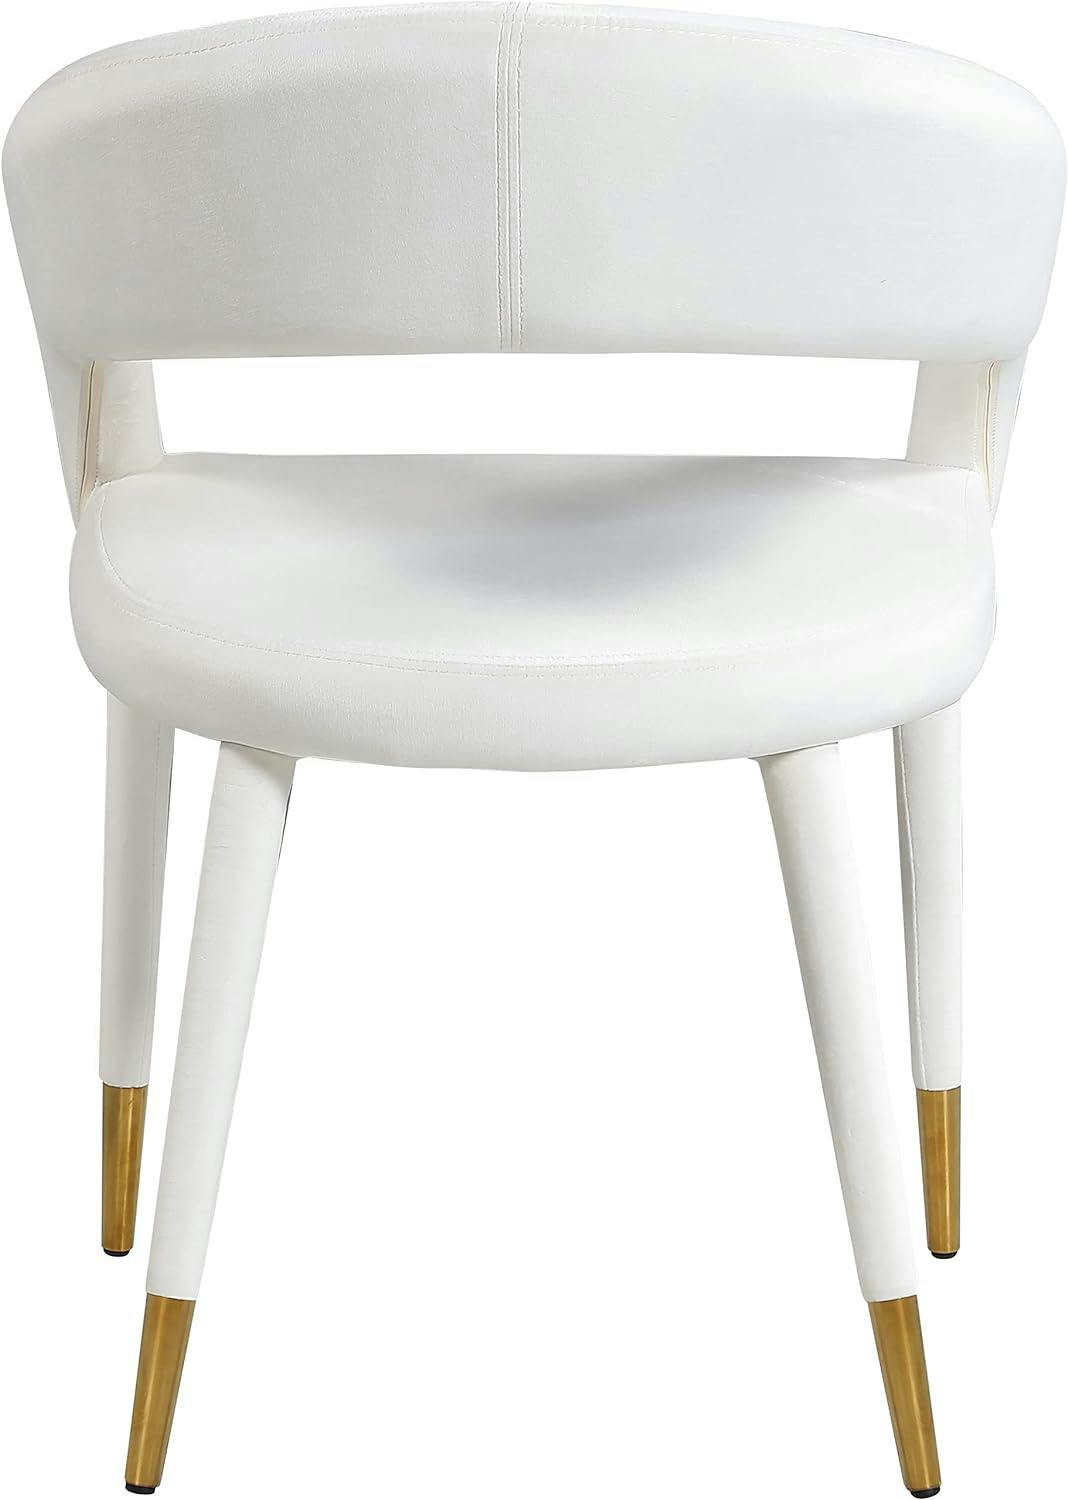 Elegant Cream Velvet Upholstered Arm Chair with Gold-Tipped Metal Legs